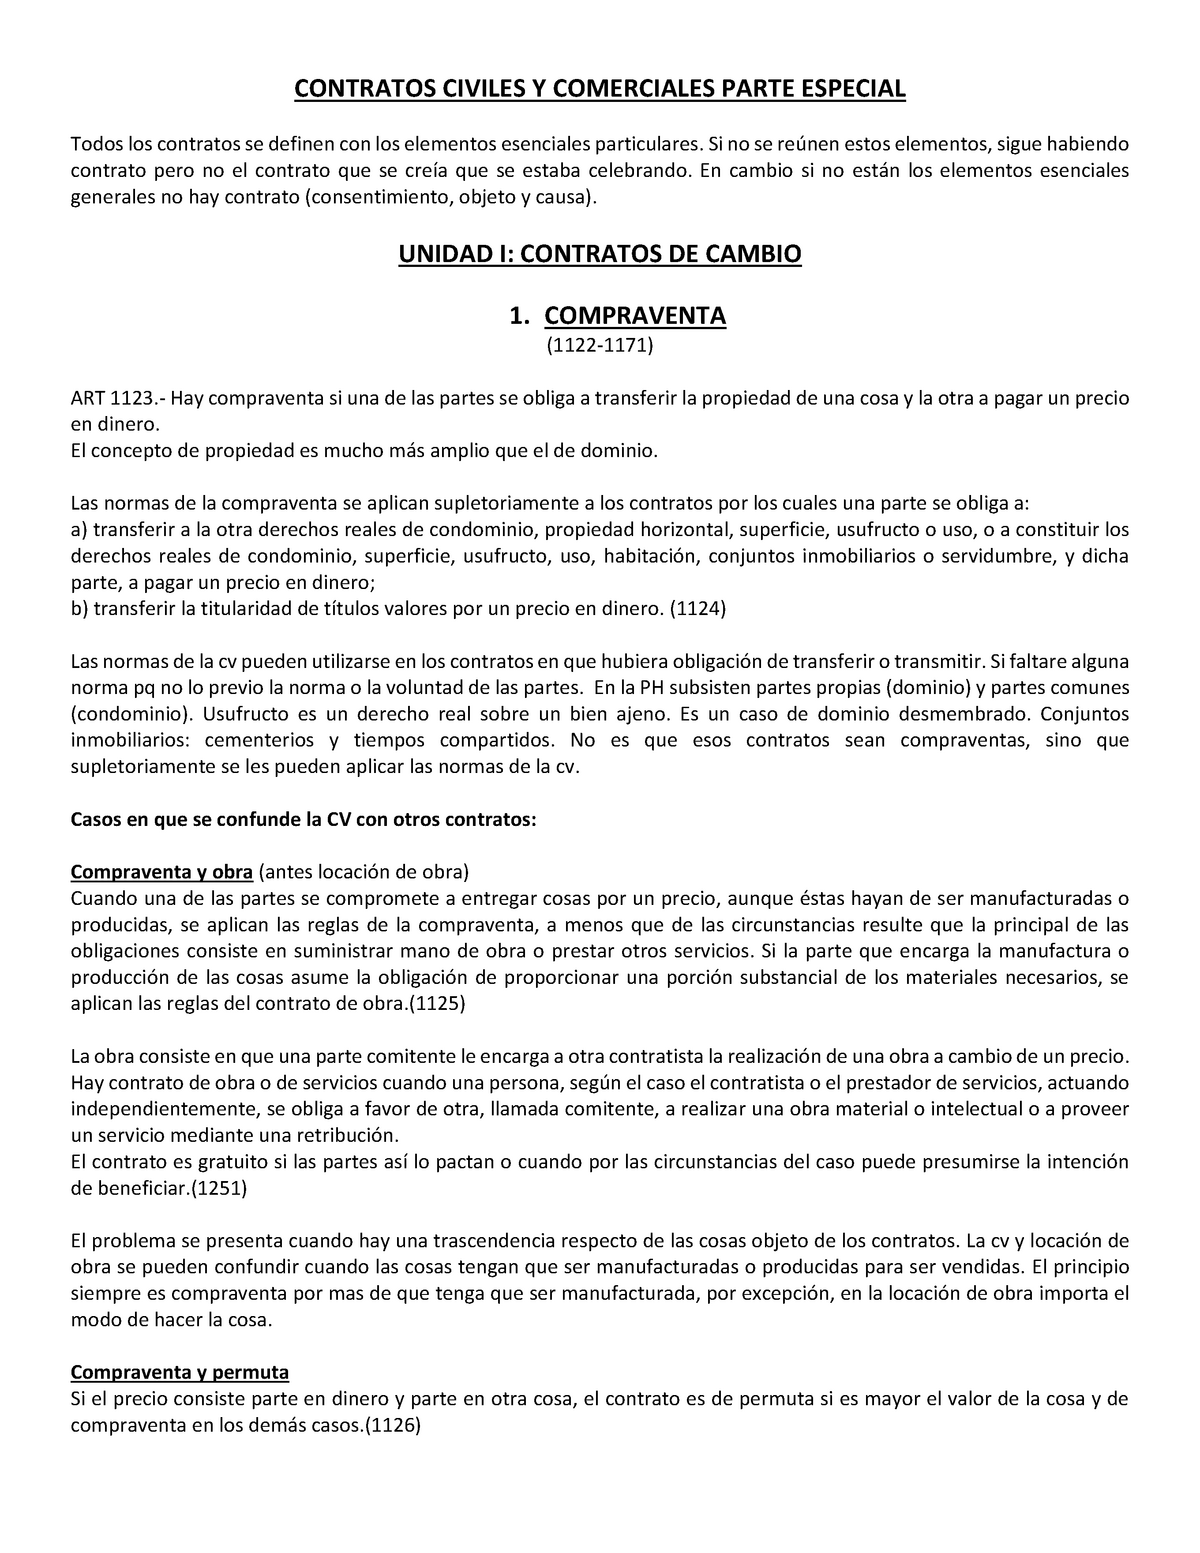 Resumen De Contratos Especial Contratos Civiles Y Comerciales Parte Especial Todos Los 0547